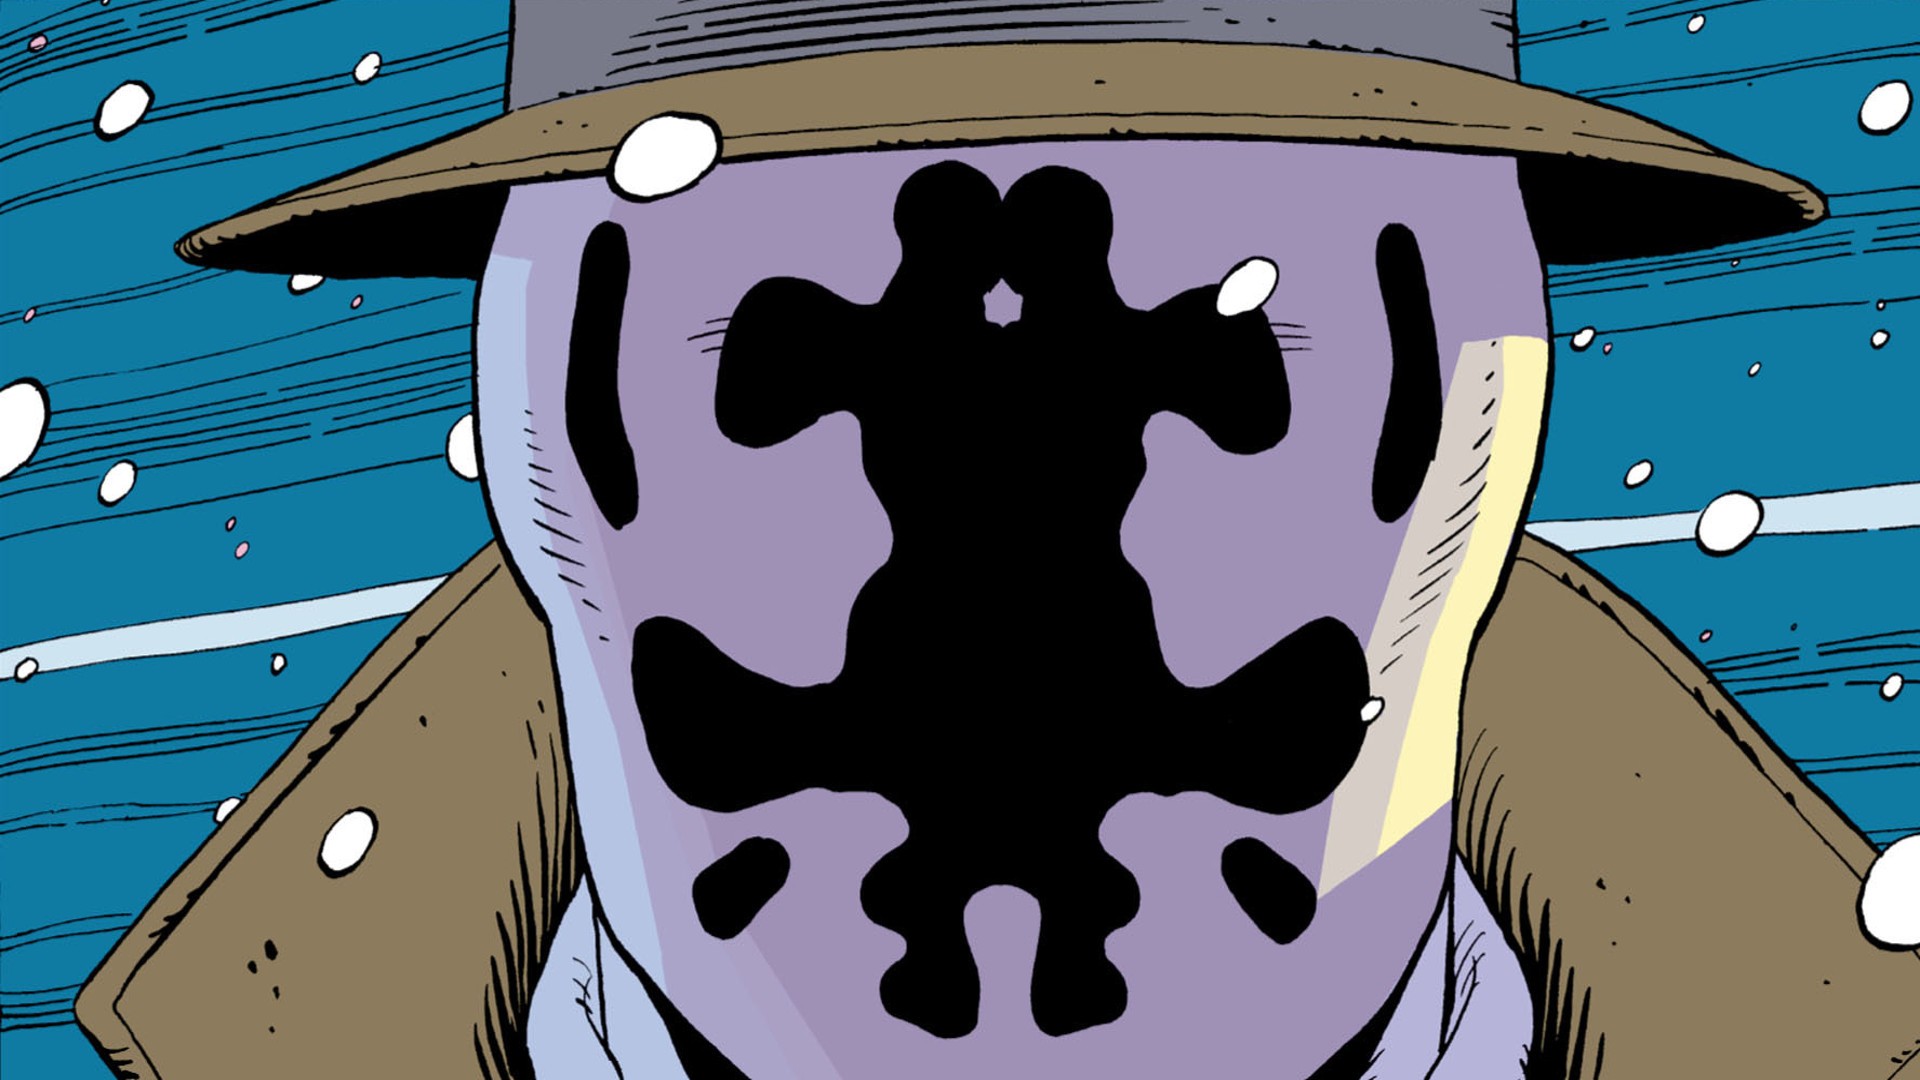 General 1920x1080 Watchmen comics Rorschach